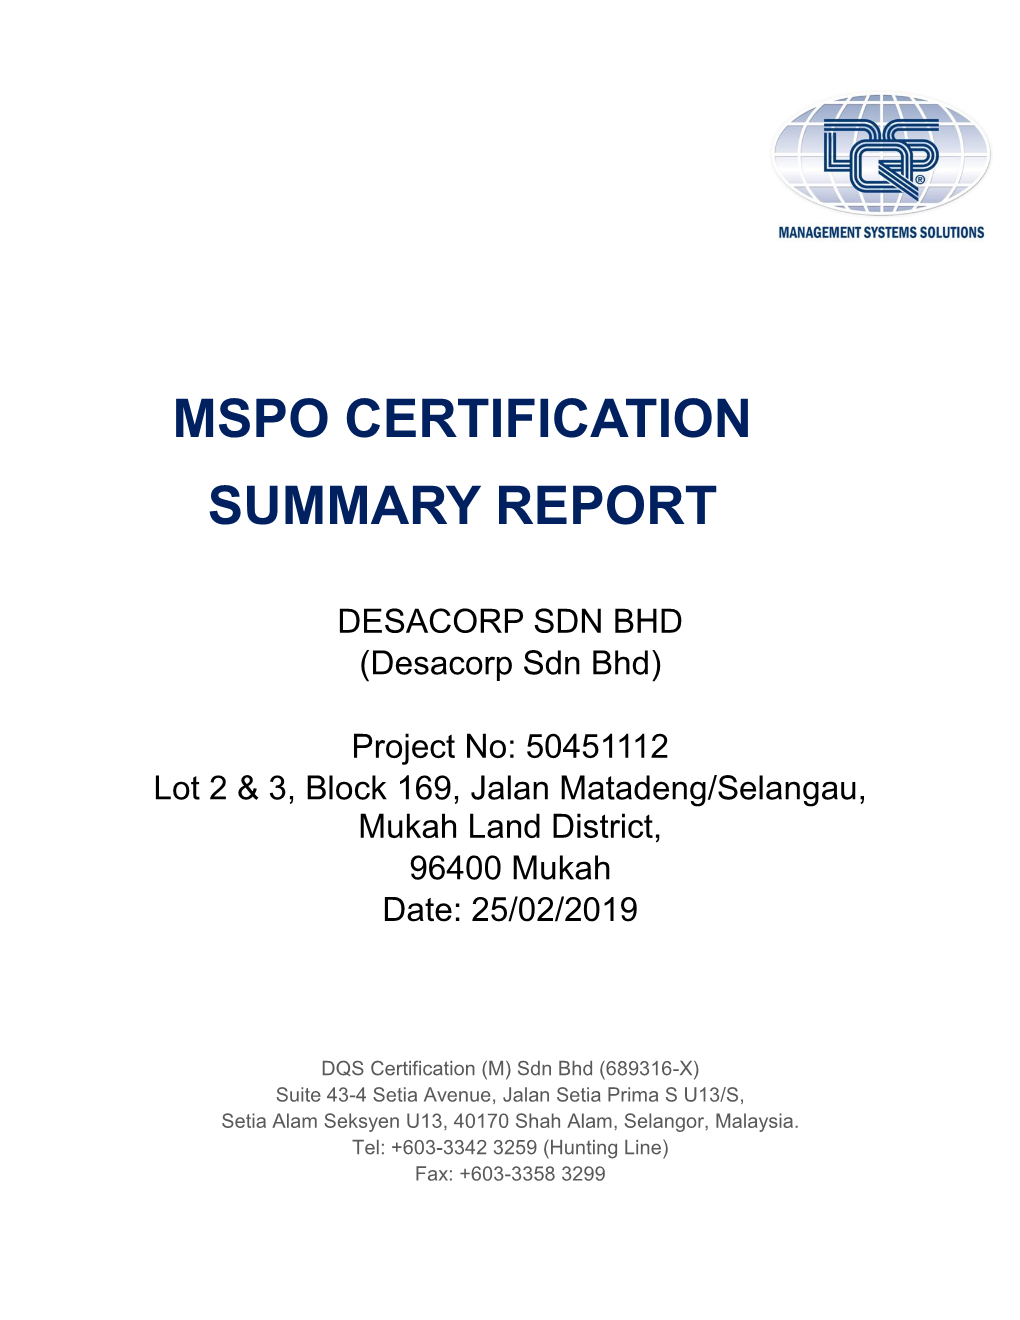 DESACORP SDN BHD (Desacorp Sdn Bhd)